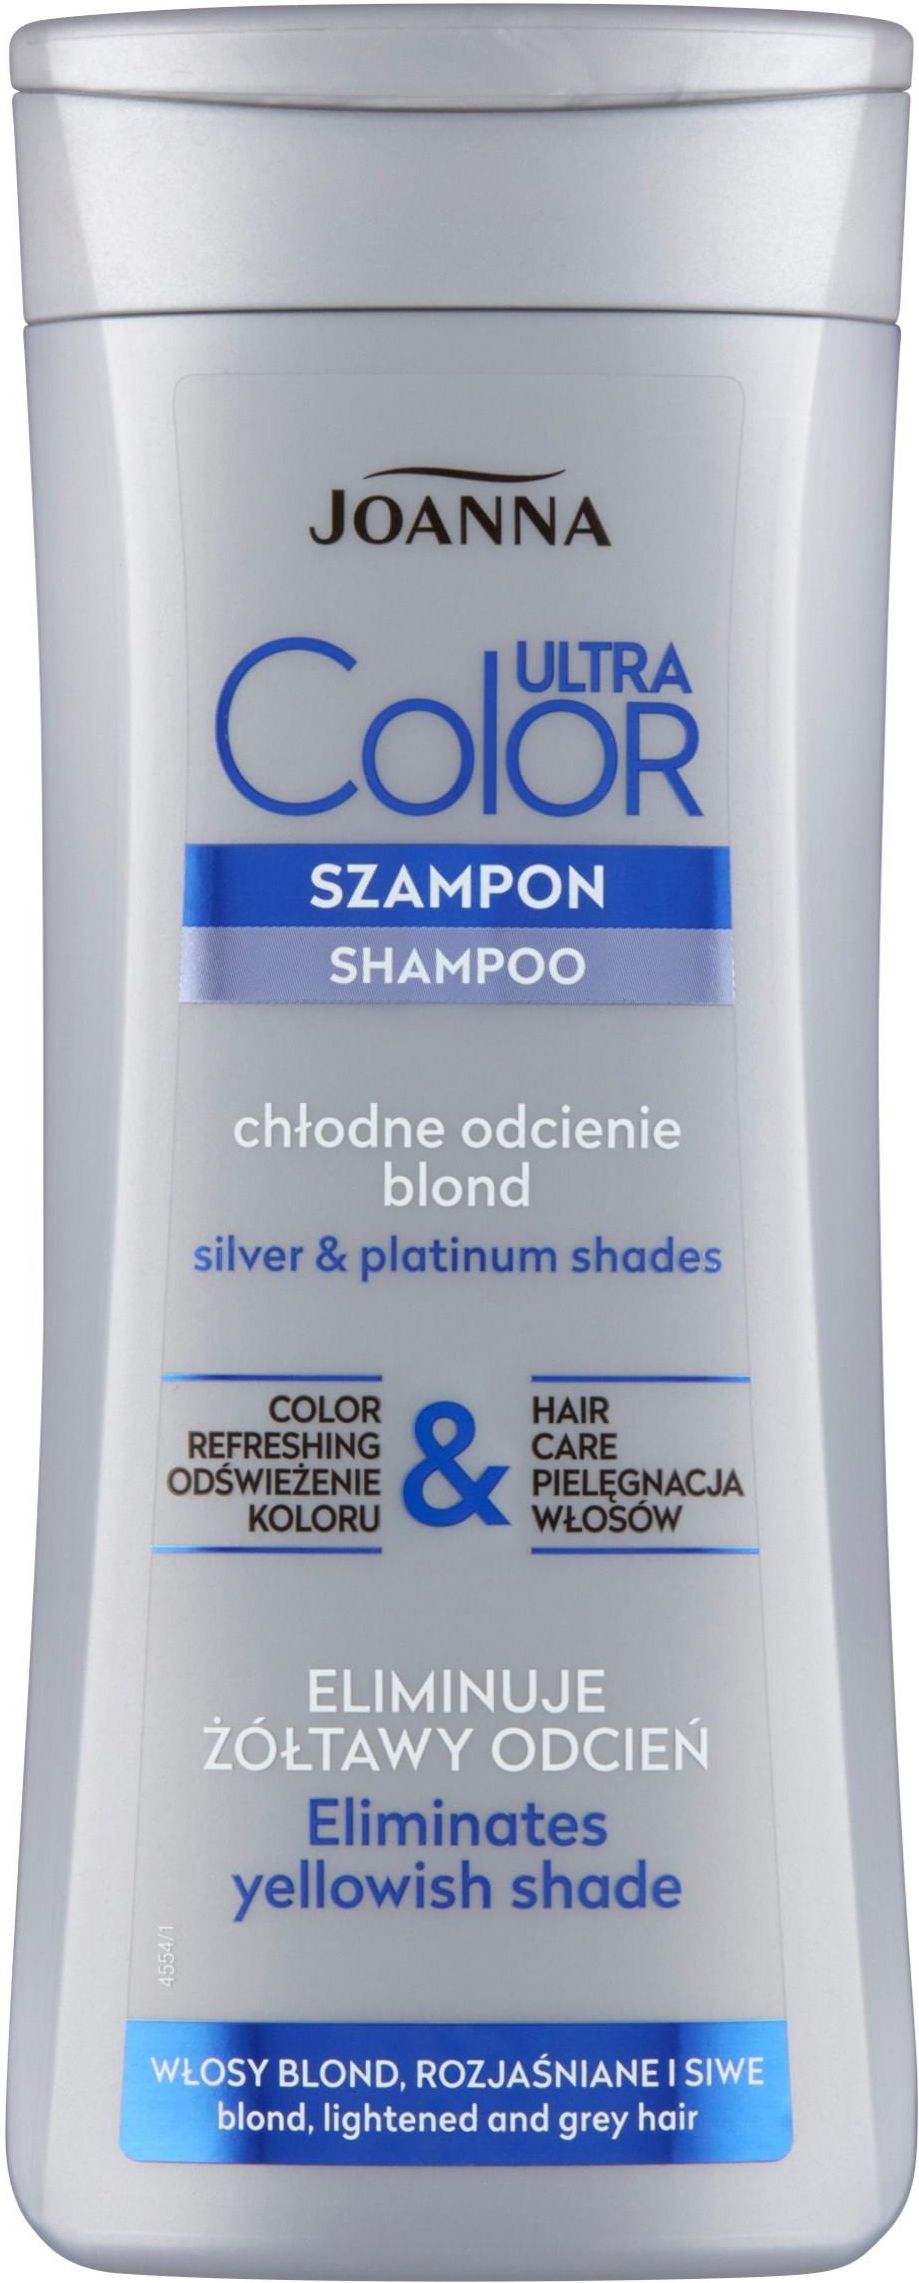 szampon nadający chłodny odcień włosom blond